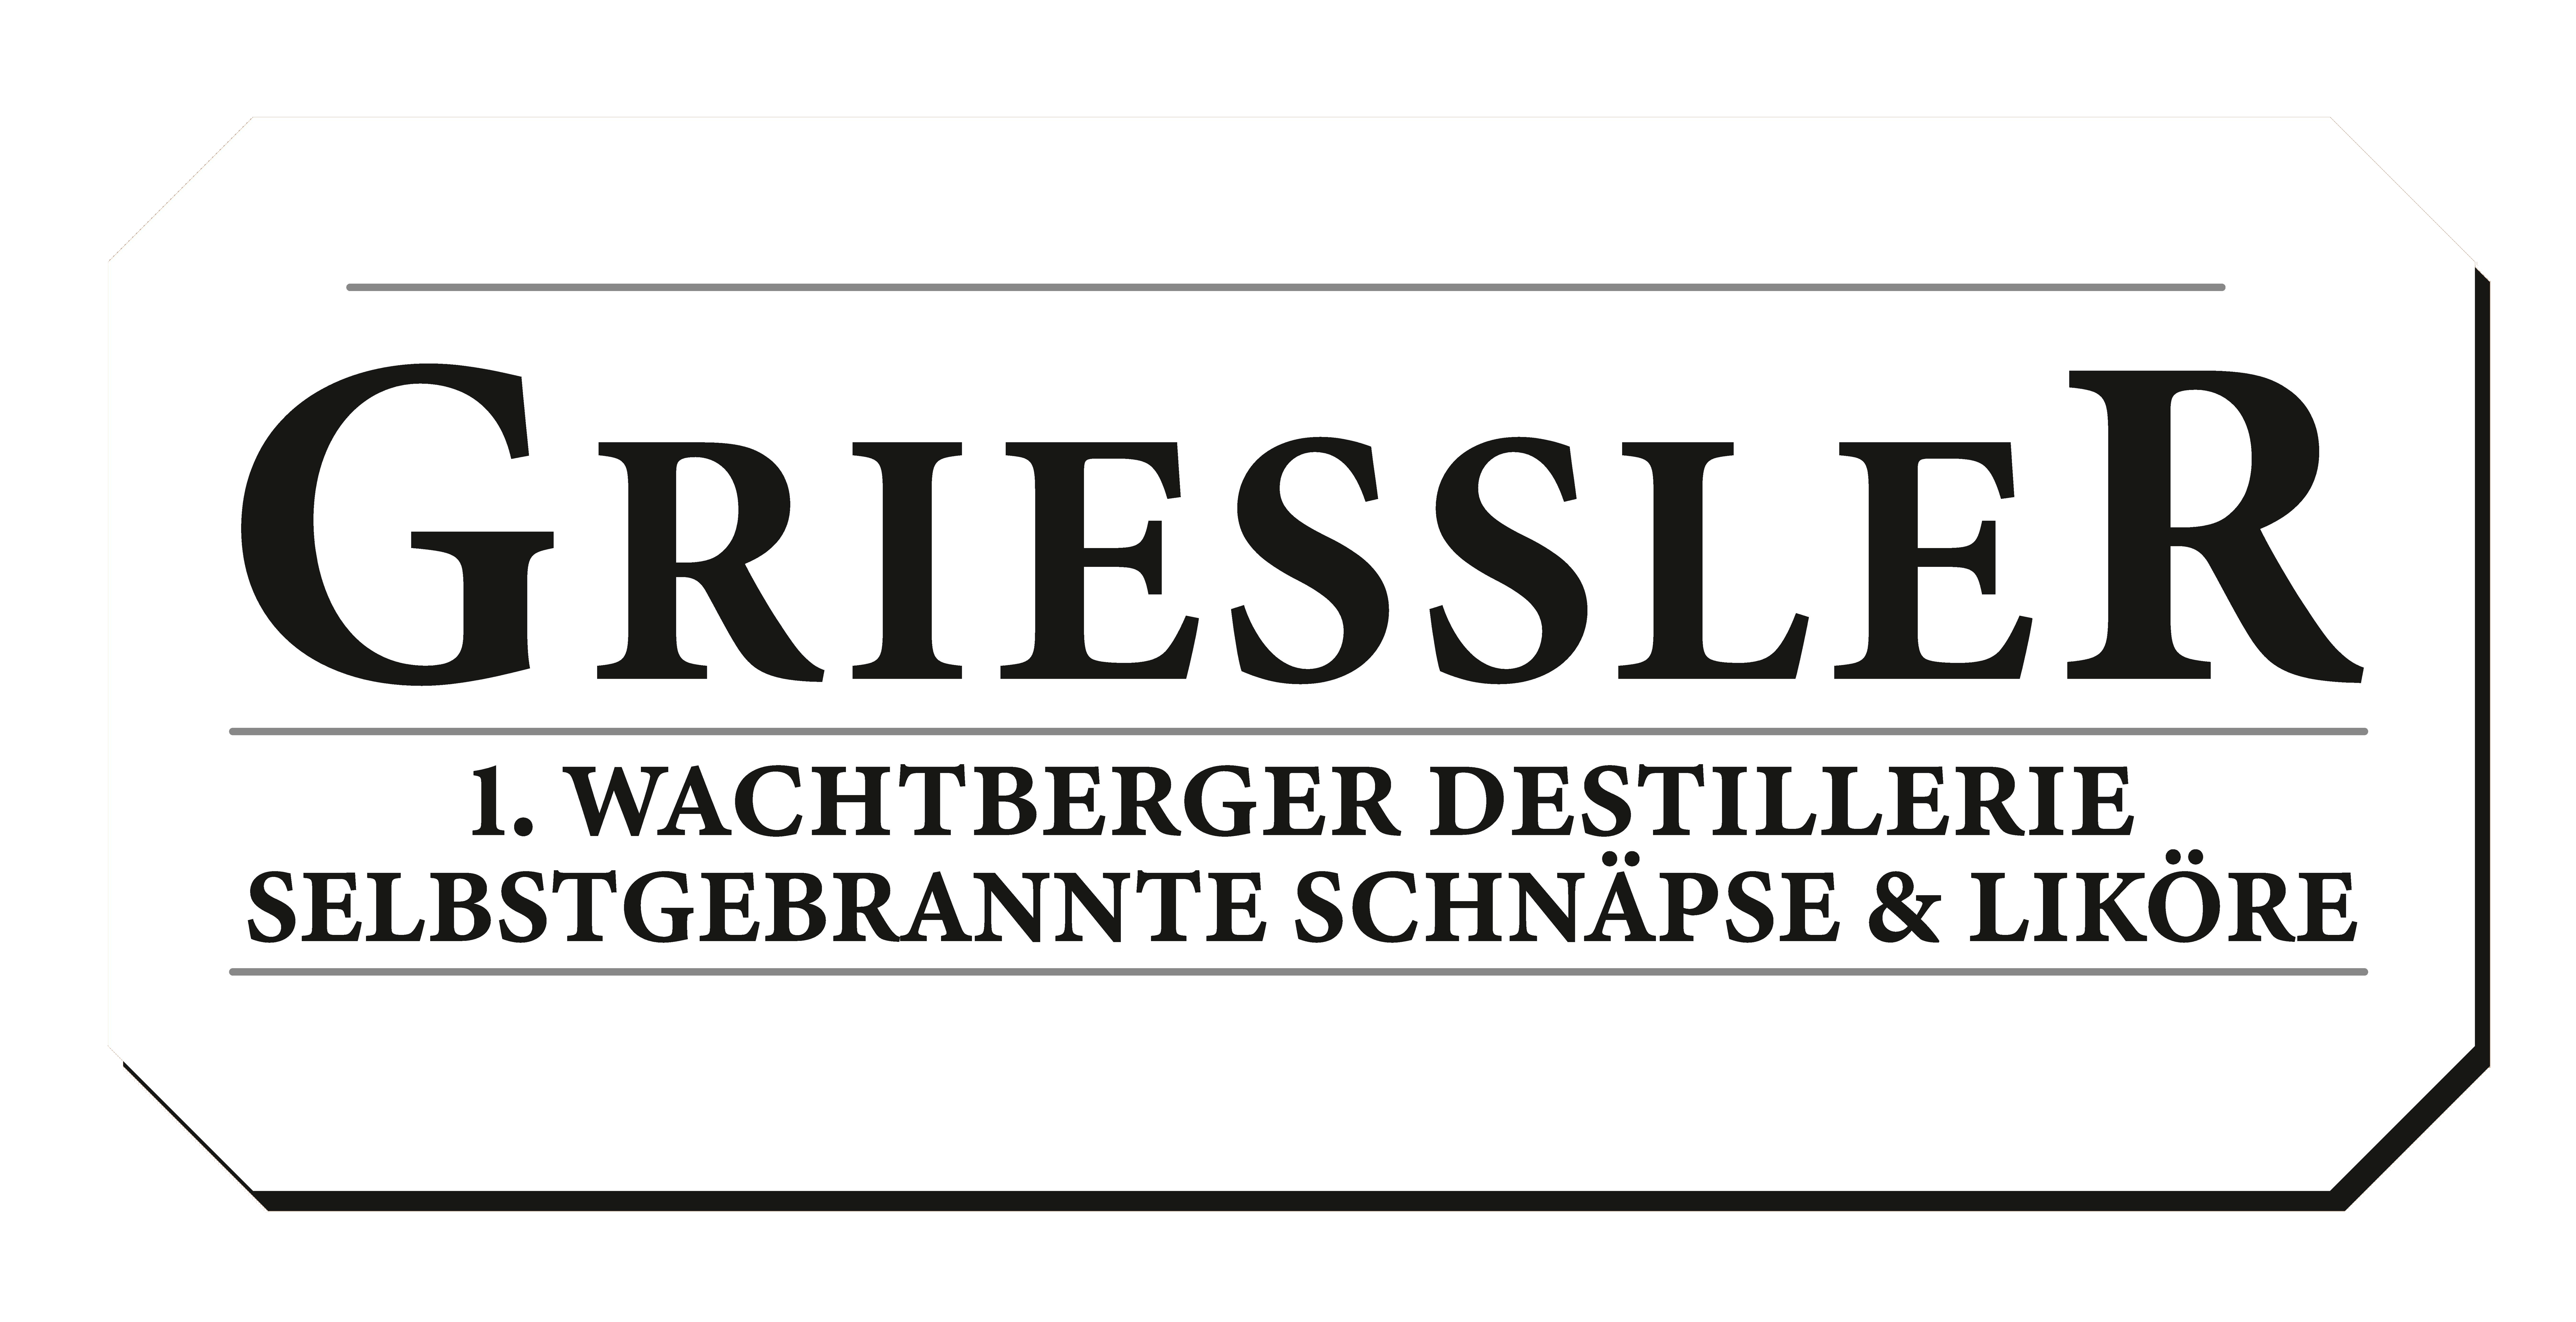 Wachtberger Destillerie